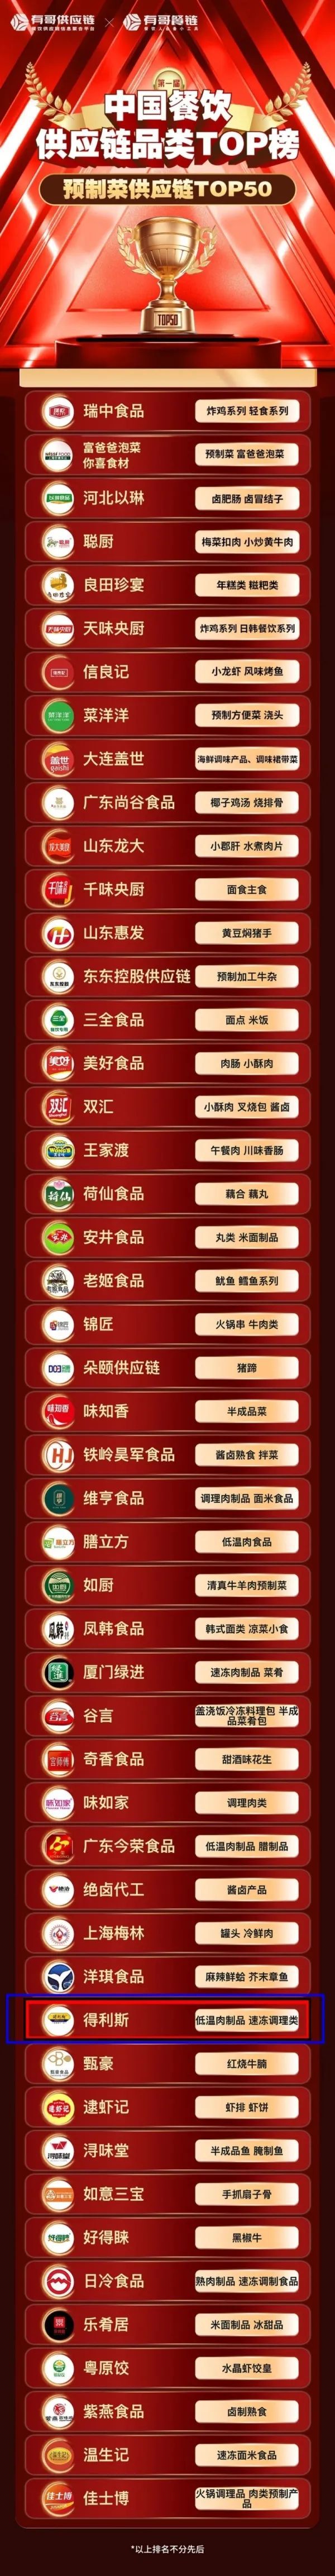 得利斯荣登首届“中国餐饮供应链品类TOP榜”预制菜供应链TOP50